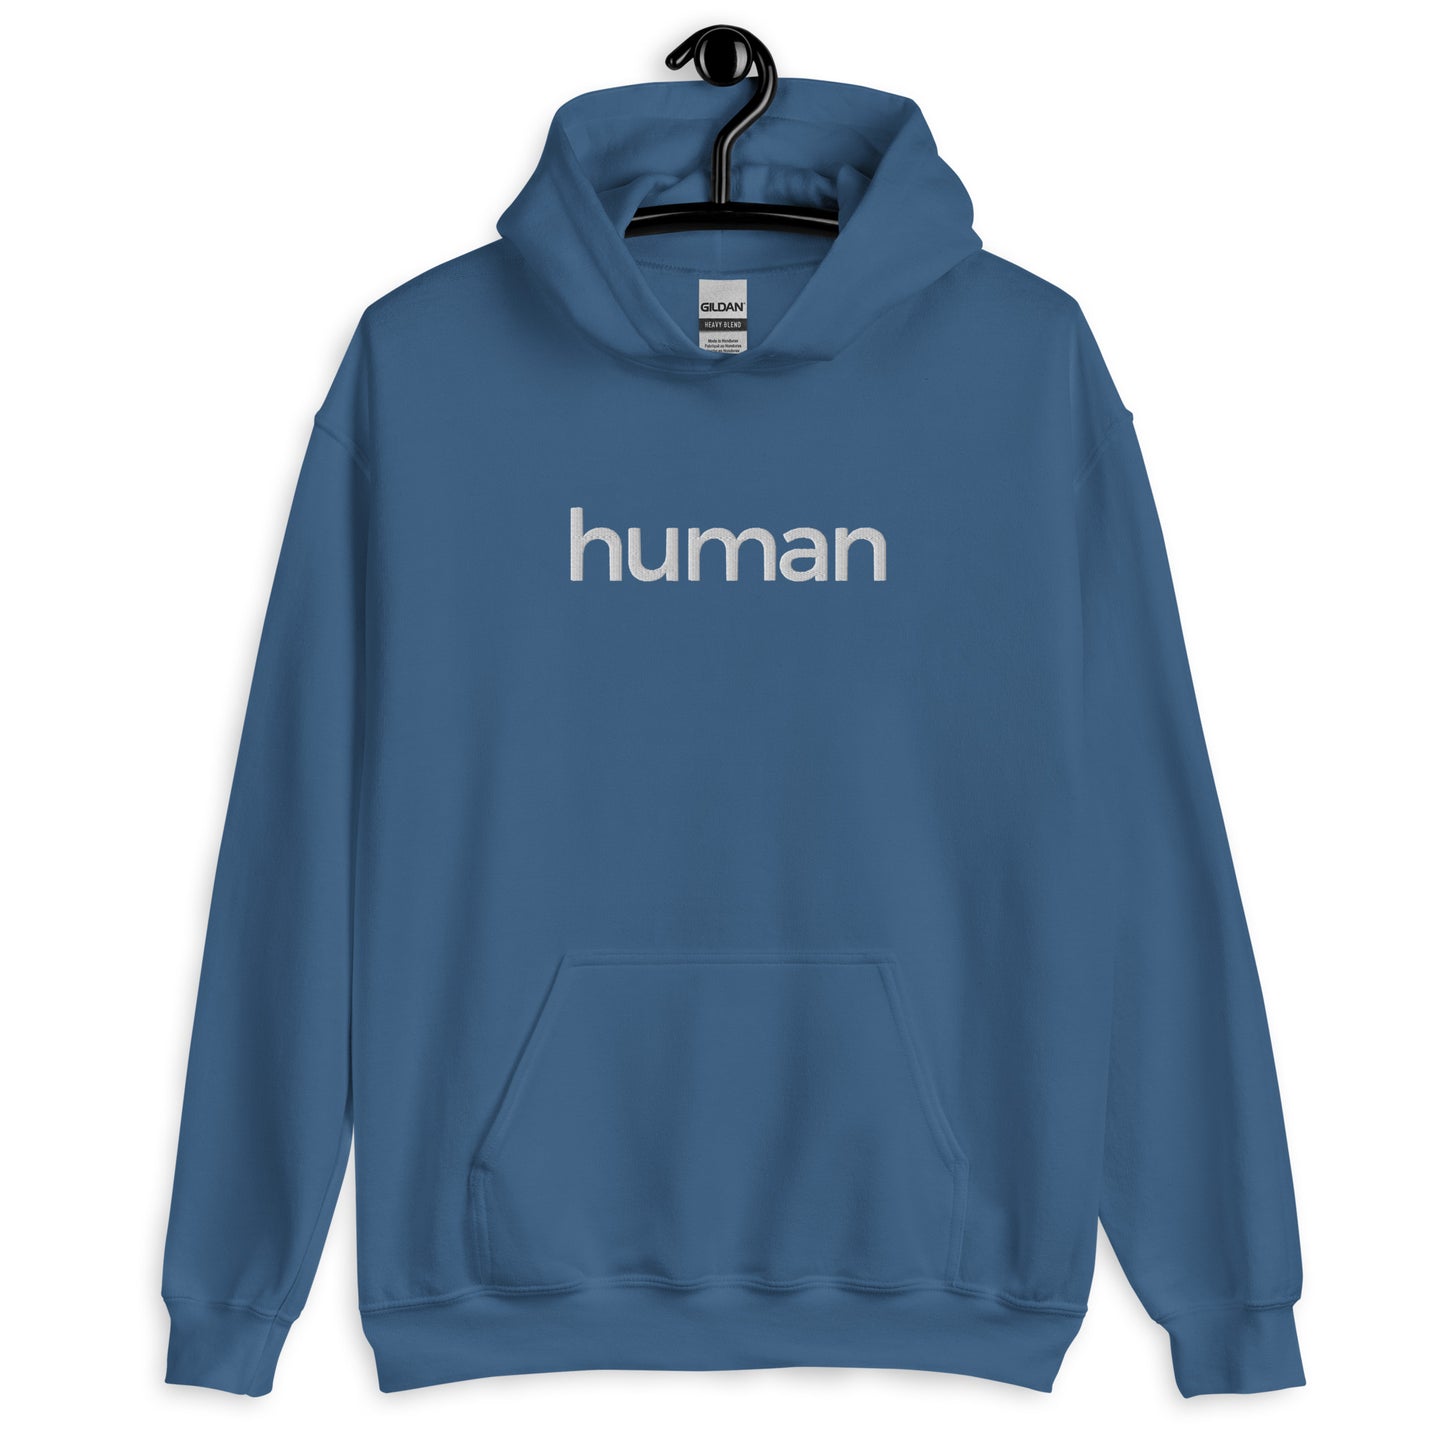 Human - Hoodie